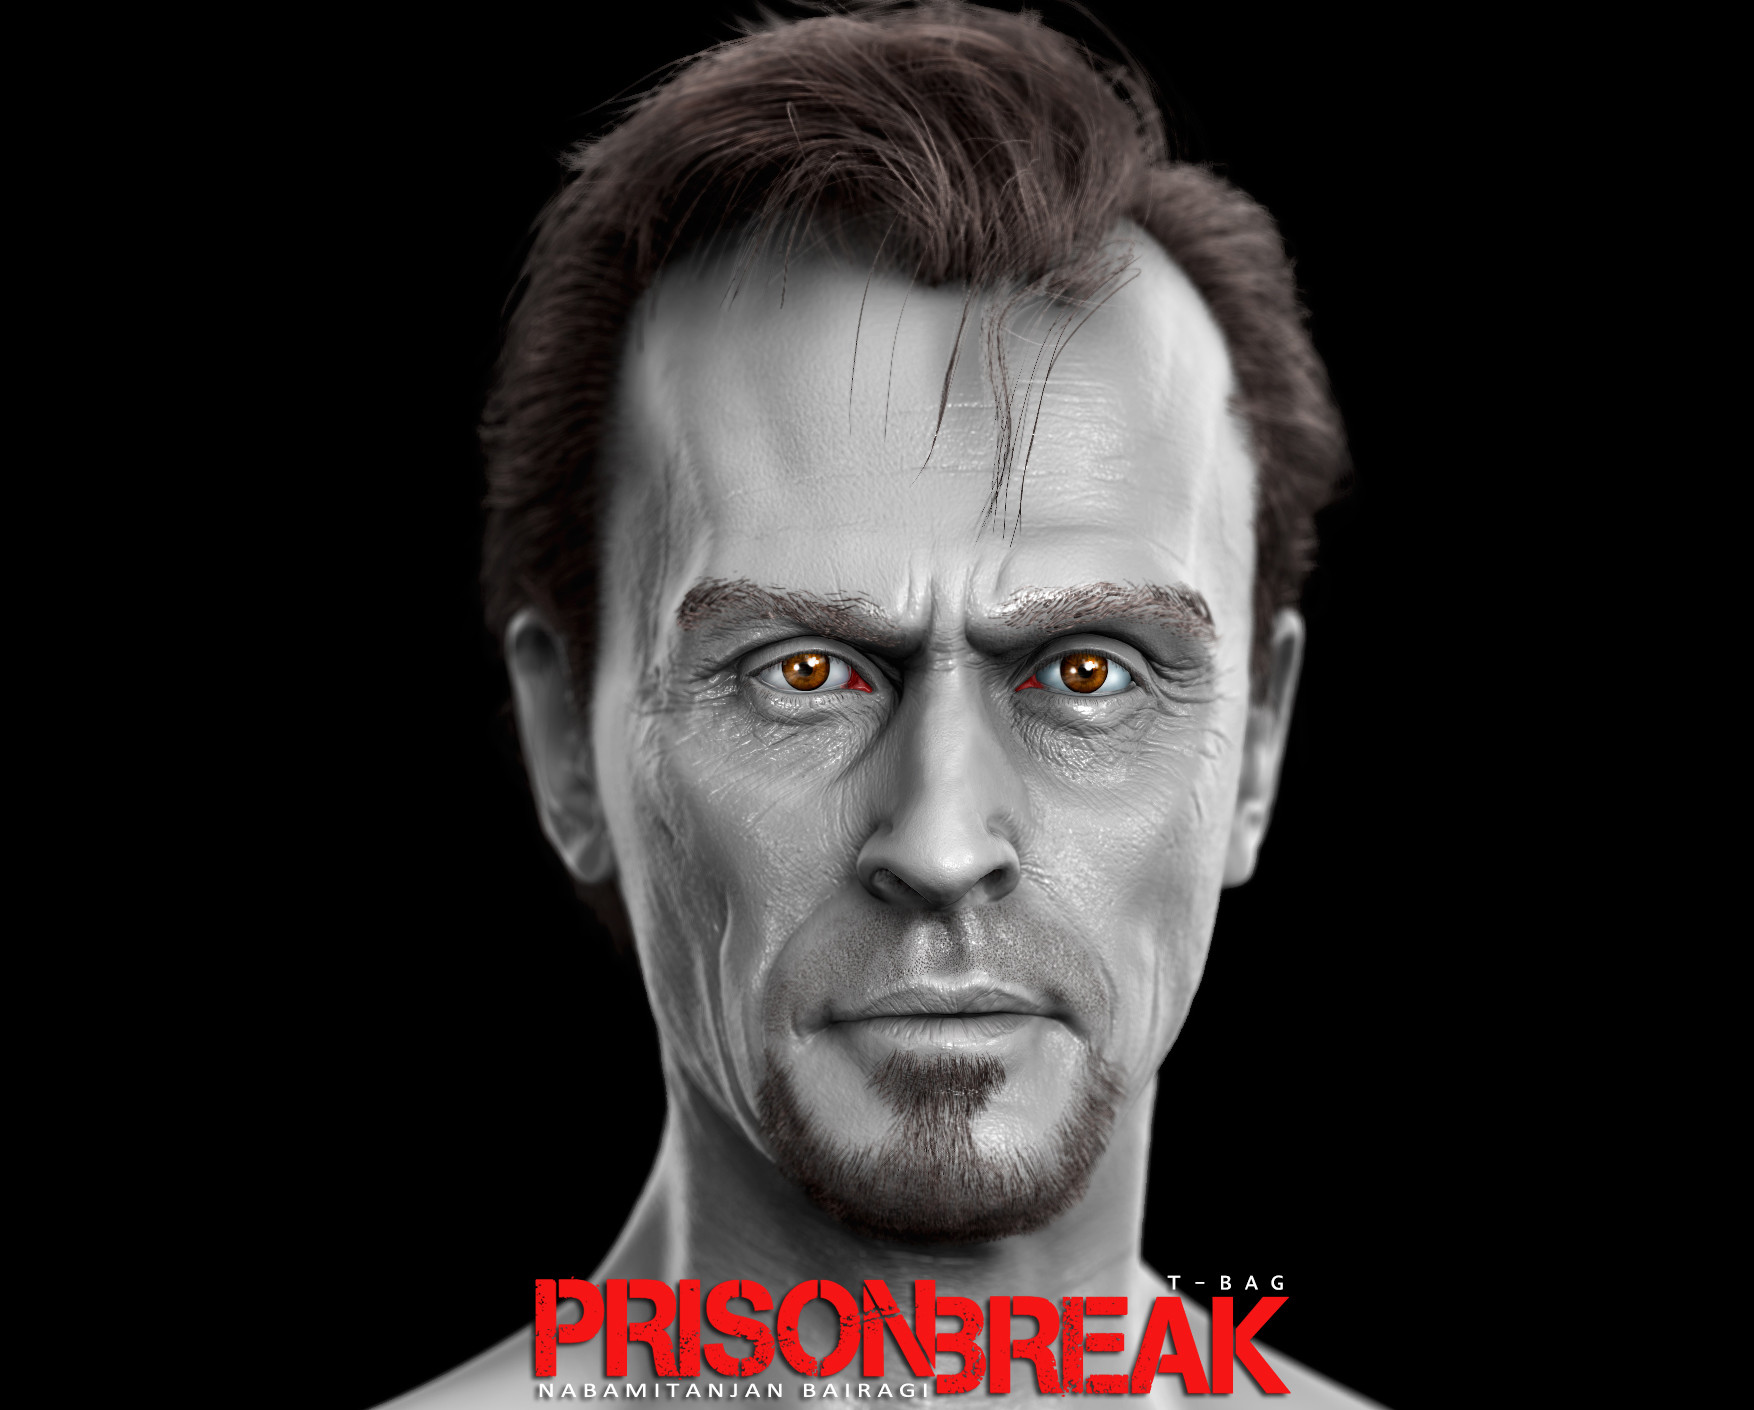 Nabamitanjan Bairagi - Prison Break fan "